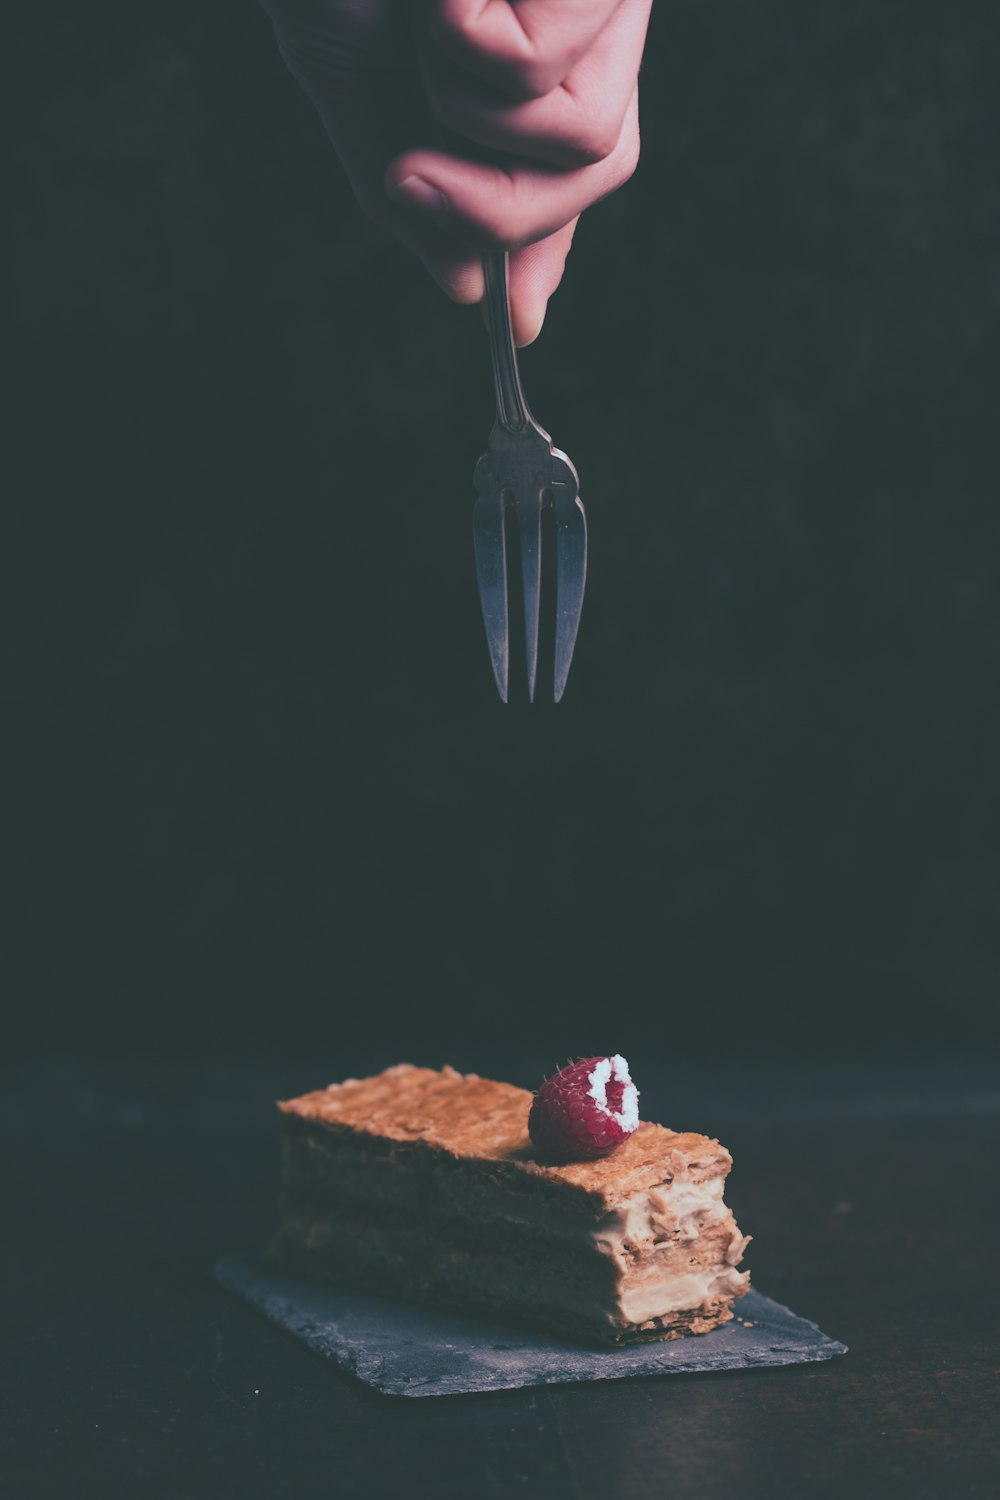 persona sosteniendo un tenedor a punto de agarrar el pastel